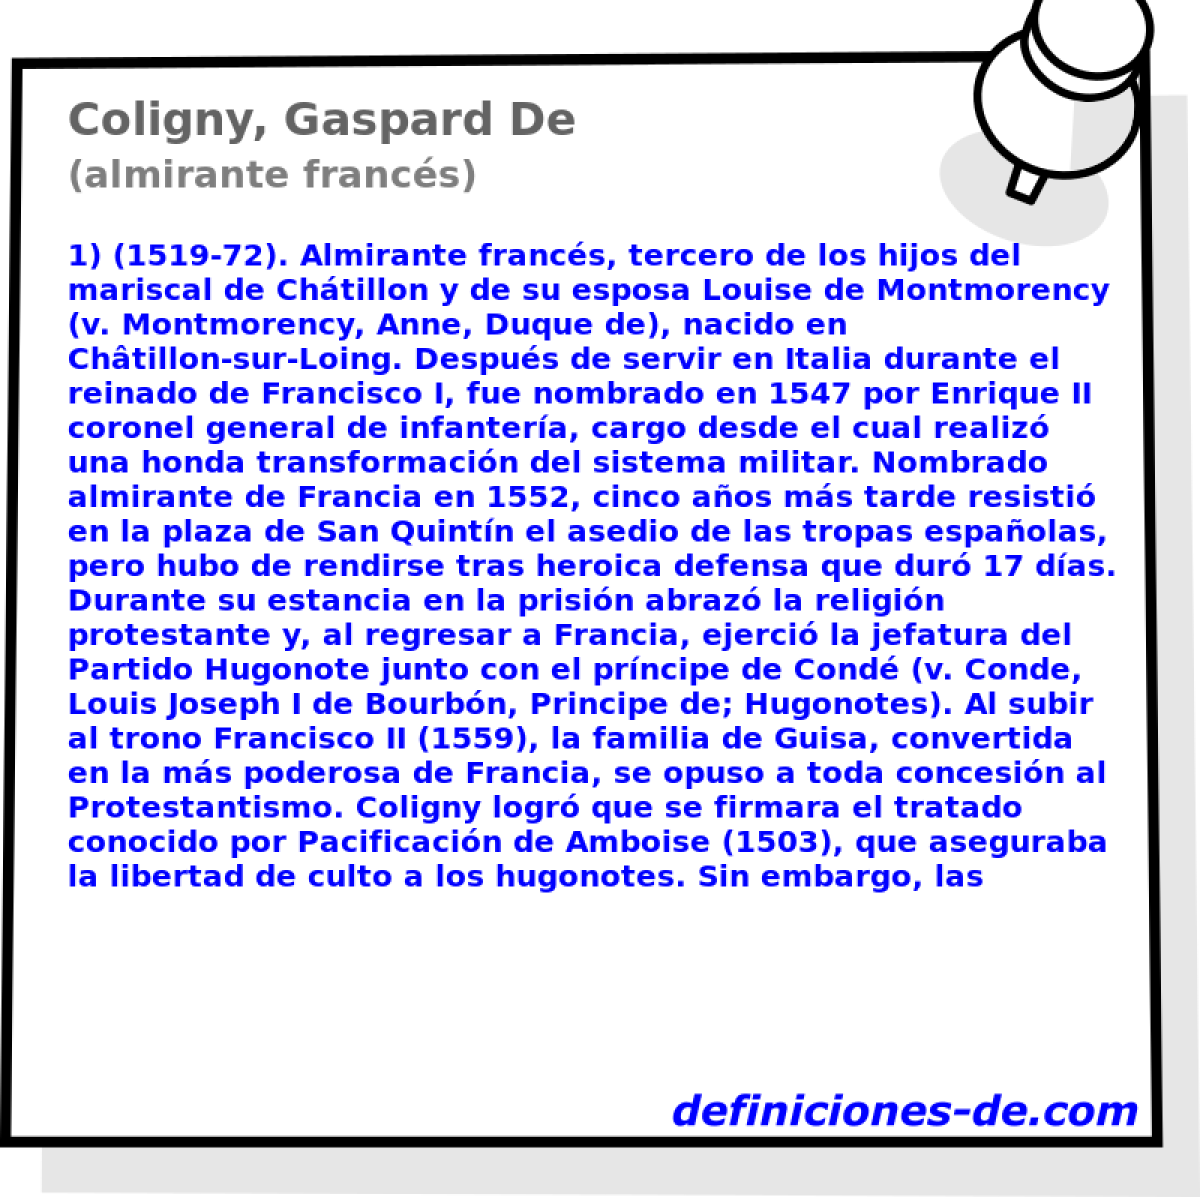 Coligny, Gaspard De (almirante francs)